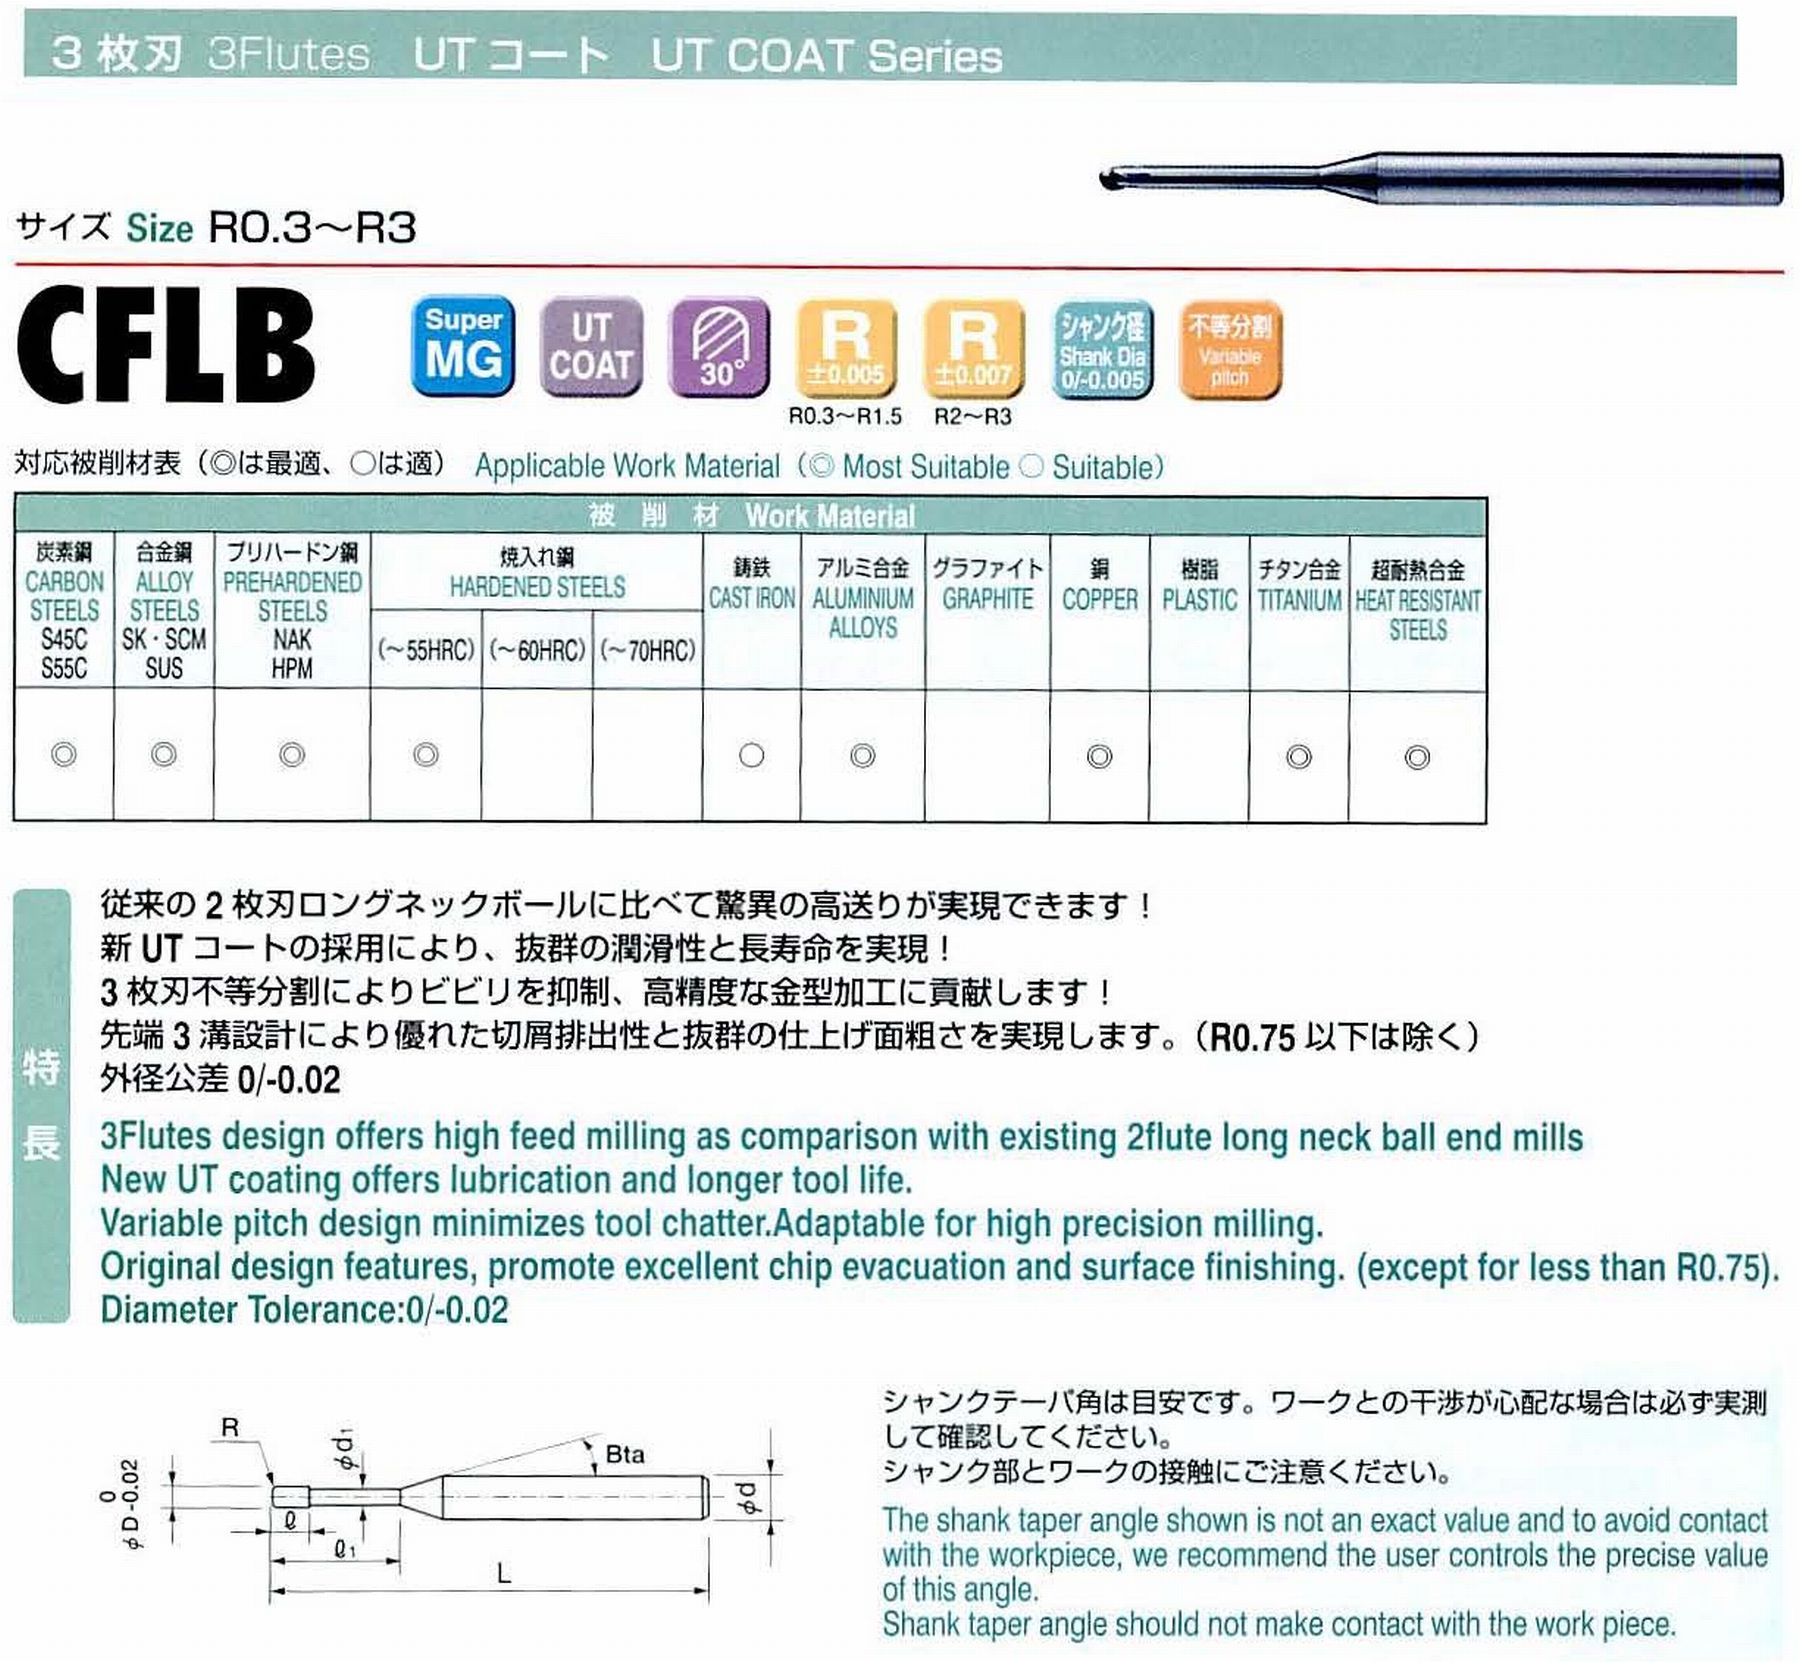 ユニオンツール 3枚刃 CFLB3015-080 ボール半径R0.75 有効長8 刃長1.2 首径1.43 シャンクテーパ角16° 全長50 シャンク径4